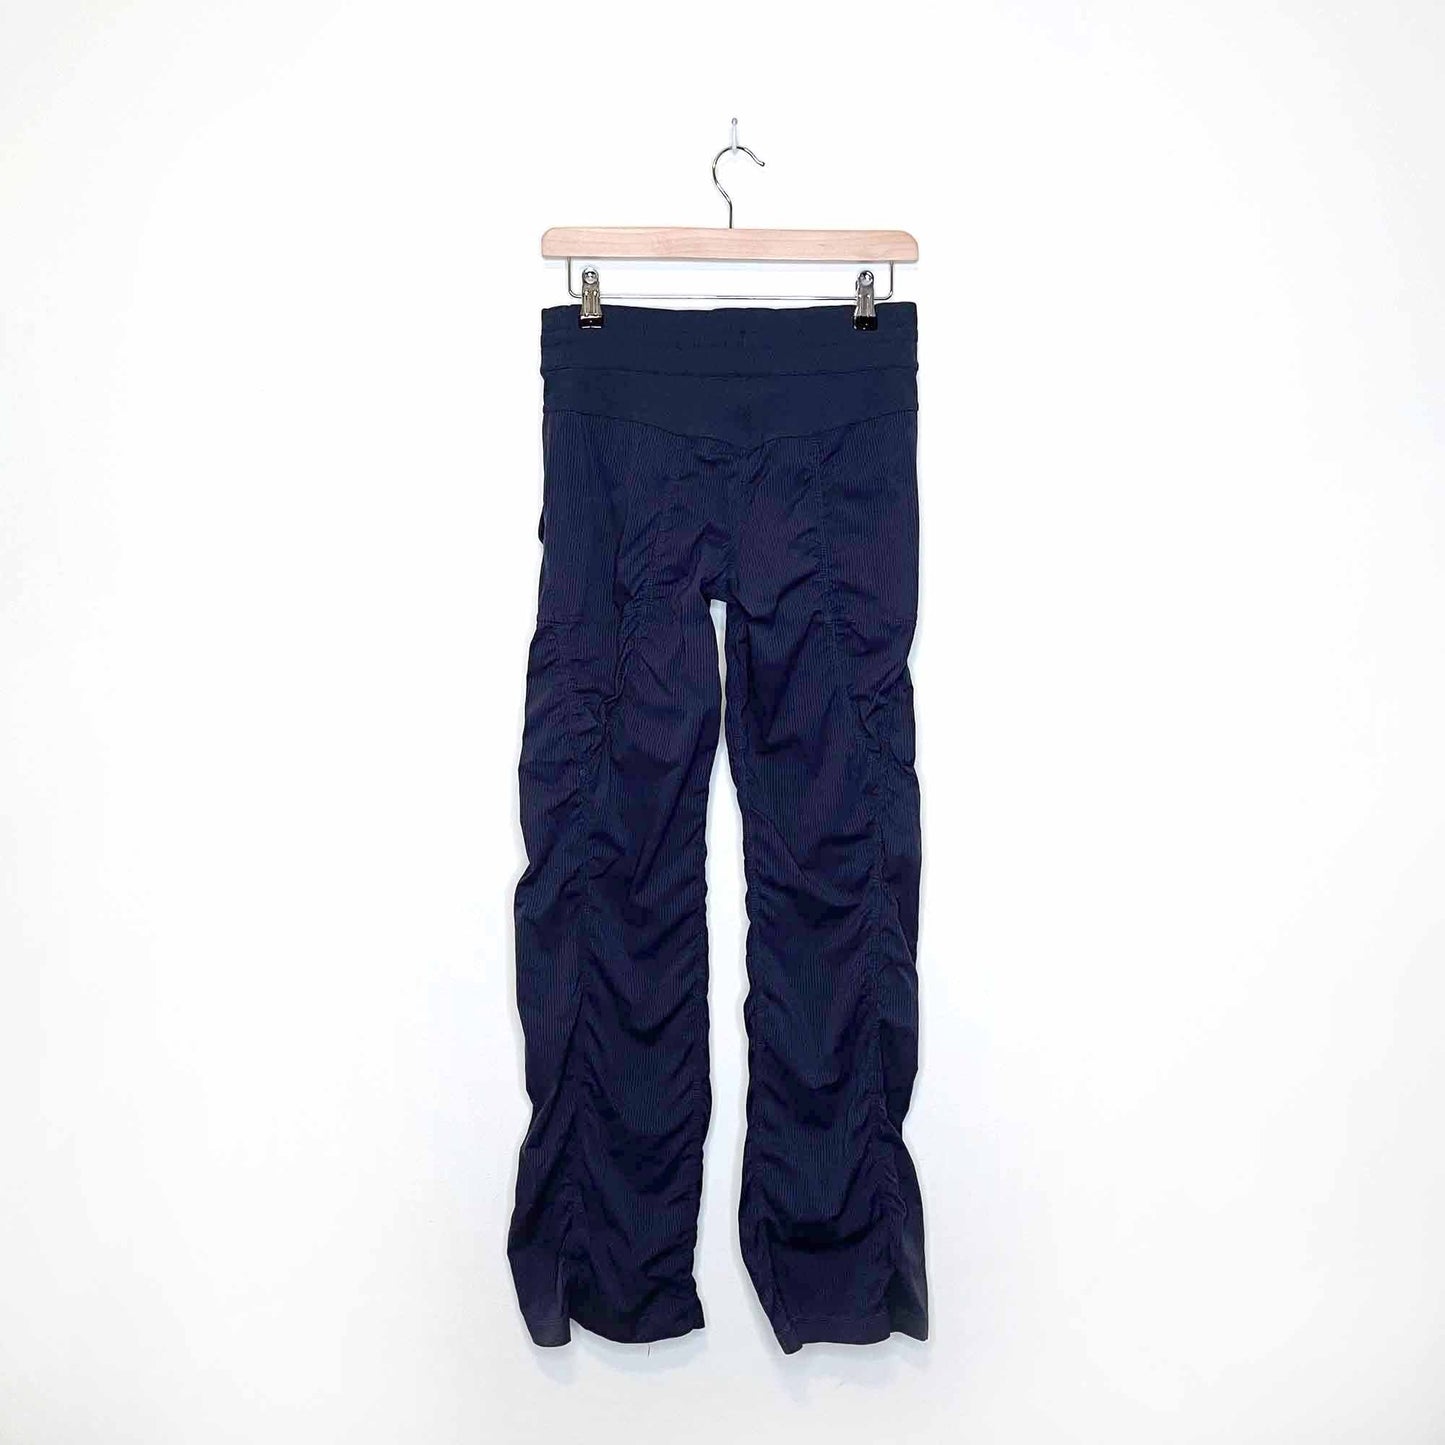 lululemon grey studio dance pants - size 4